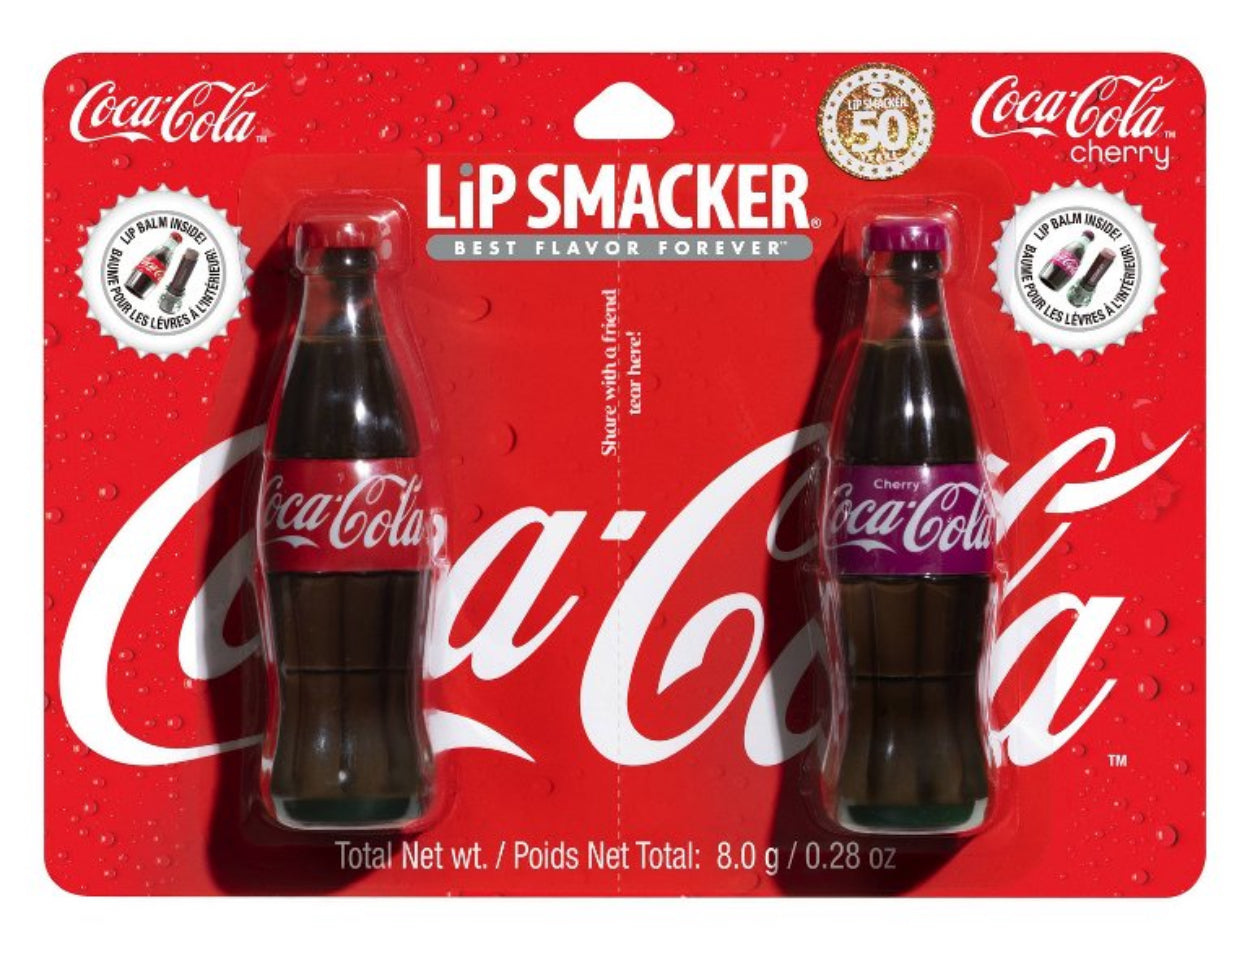 Lip Smacker Coca-Cola Contour Lip Balm -
0.280z/2pc